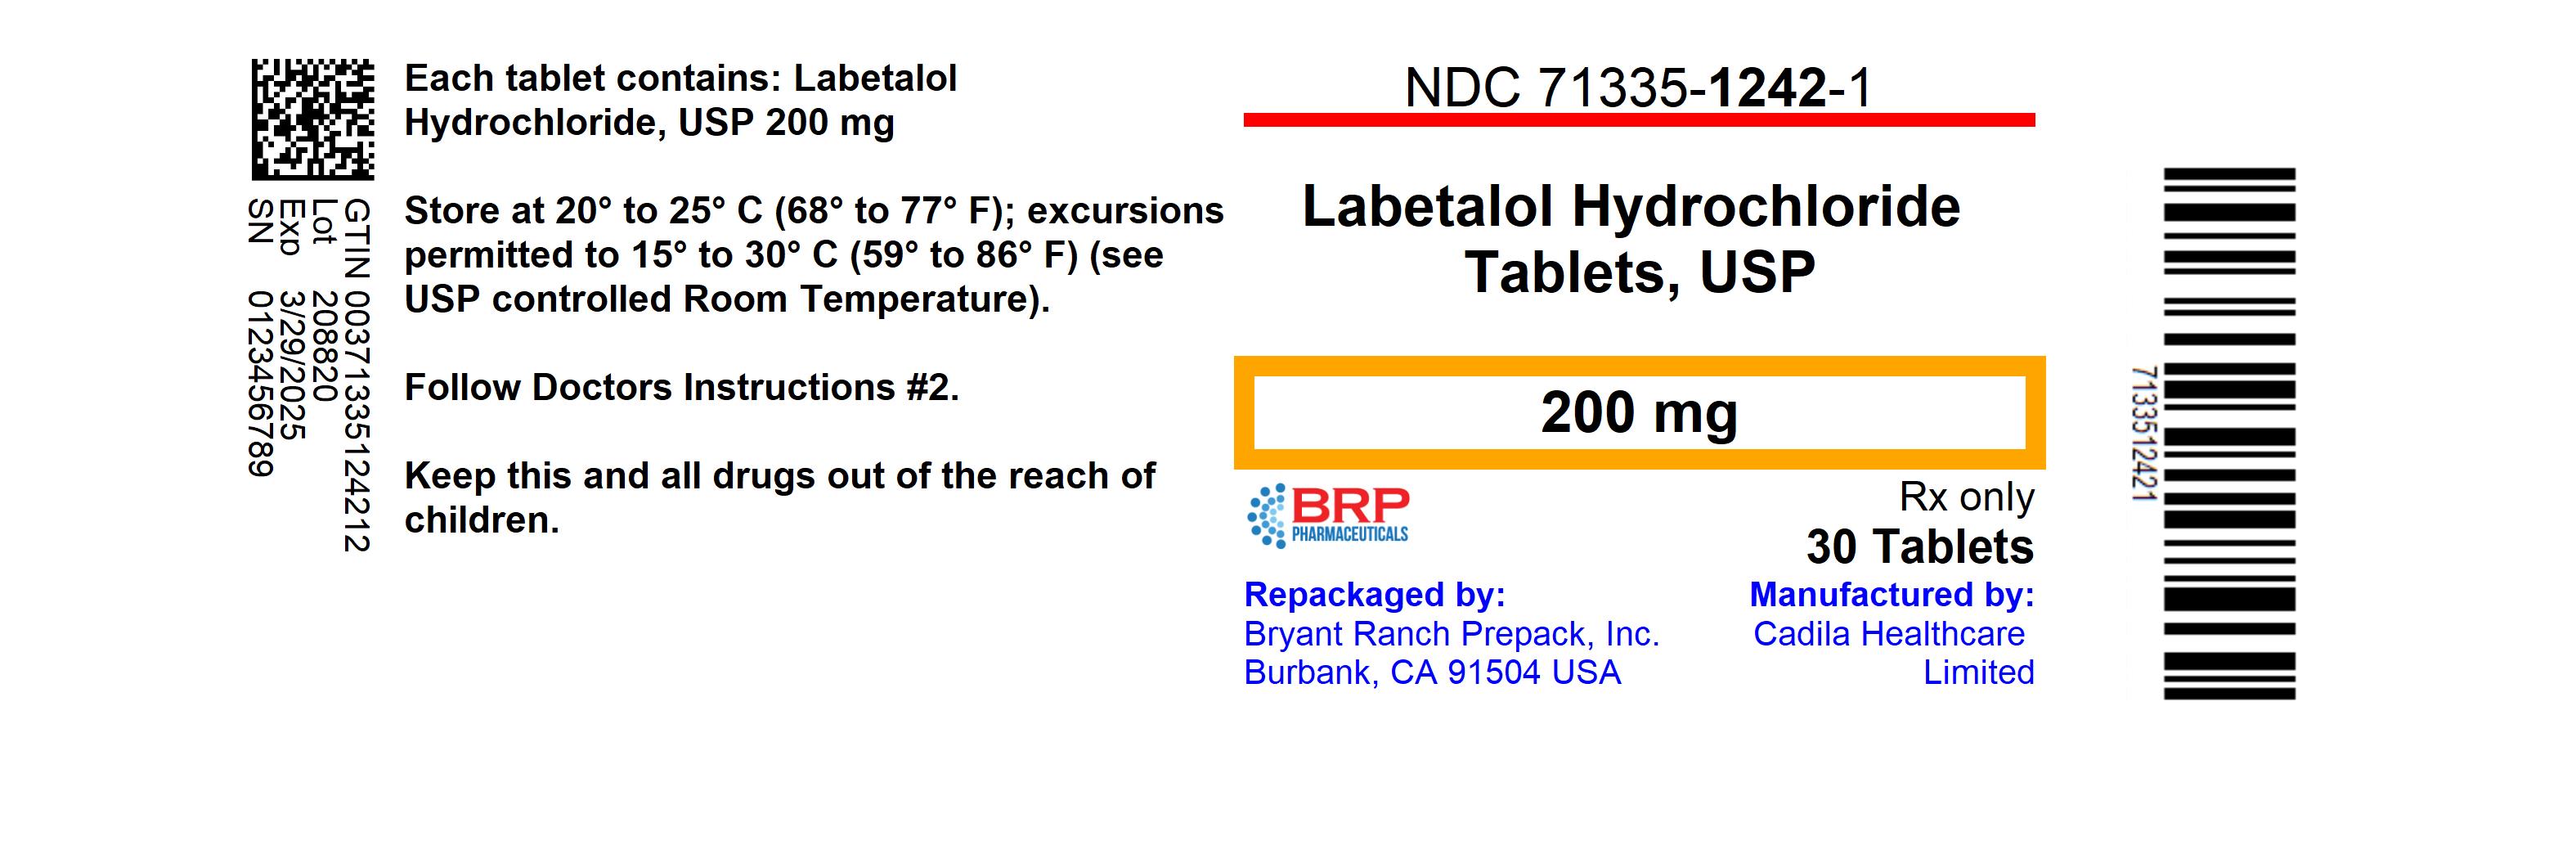 Labetalol Hydrochloride 200 Mg Breastfeeding